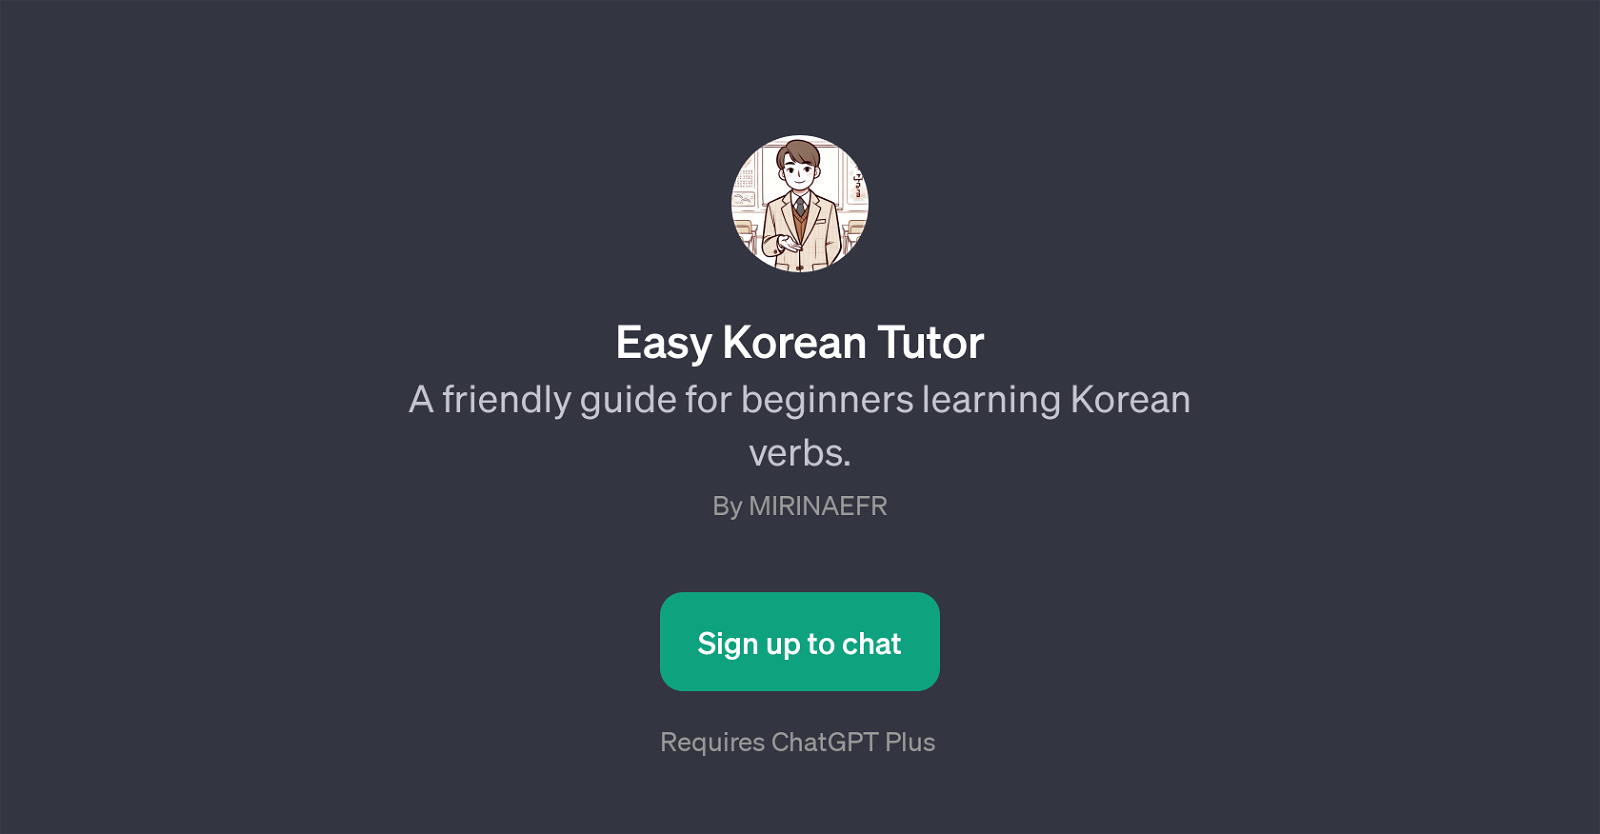 Easy Korean Tutor website